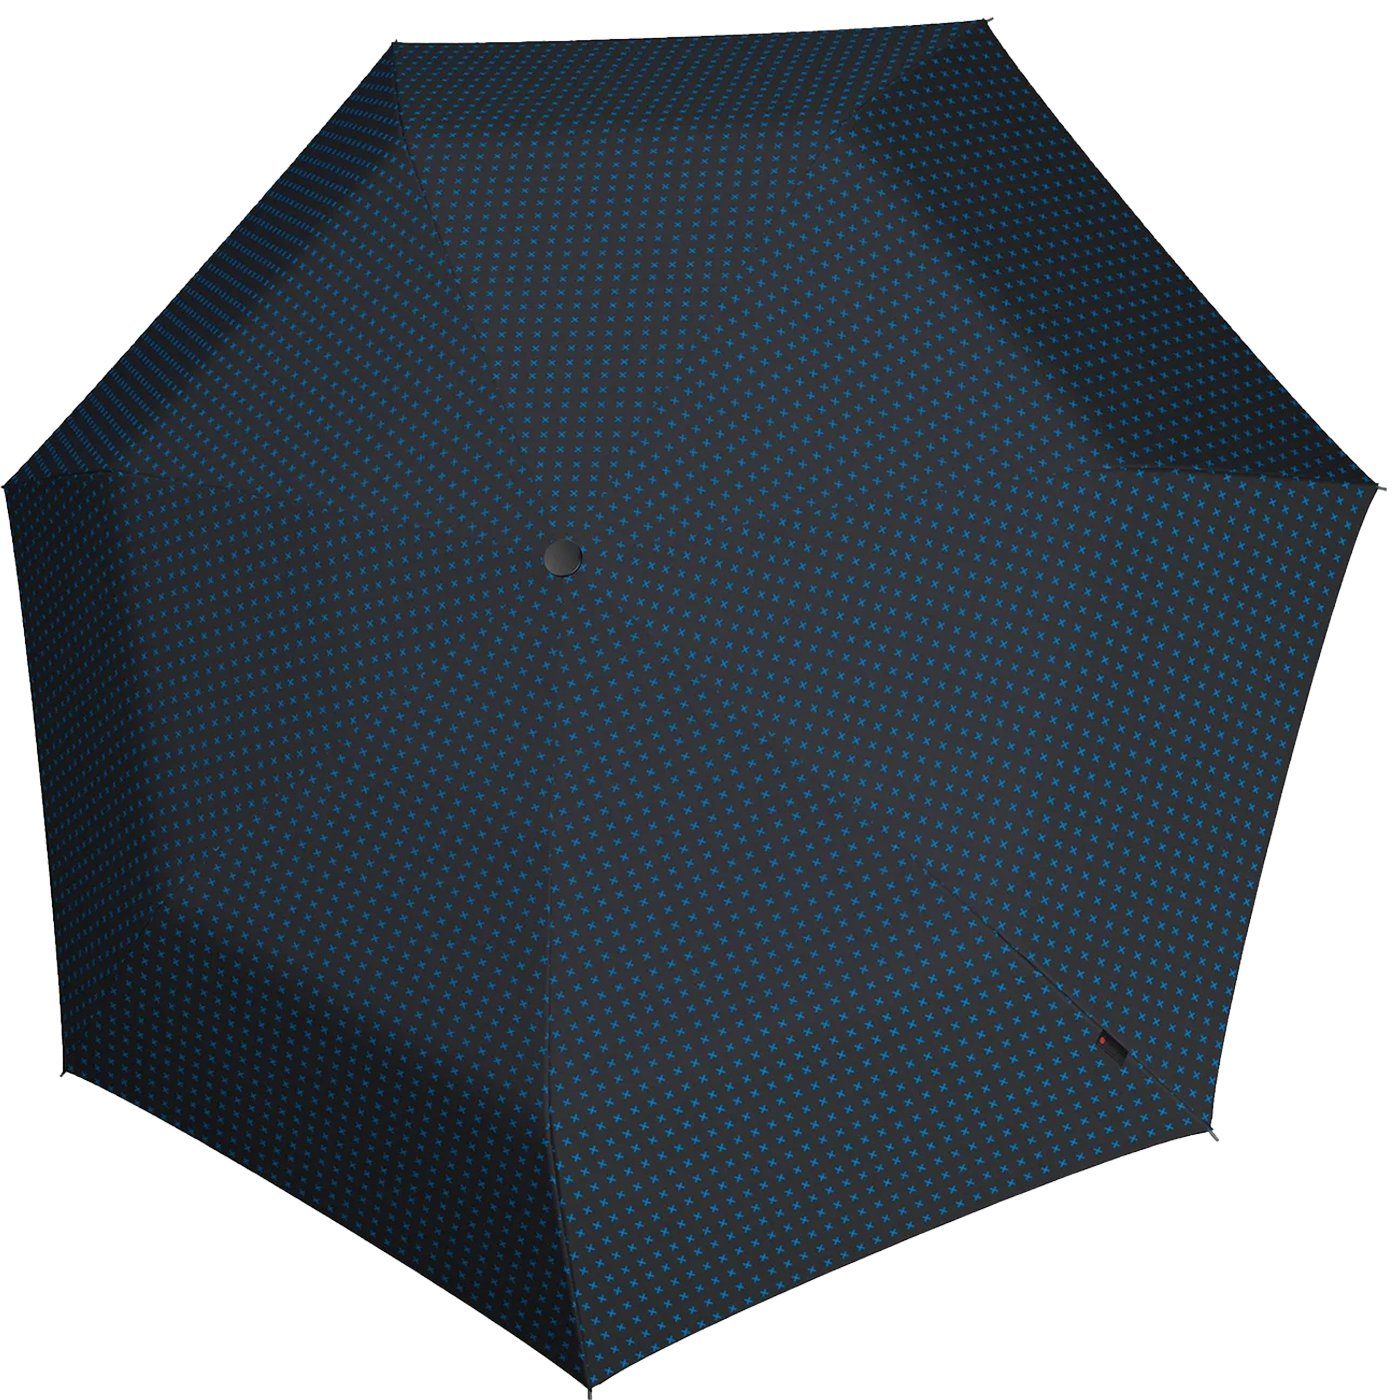 Taschenregenschirm leichte, kompakte - Knirps® Mini X1 Super 2Cross, kleine, mit der Begleiter blau ecorepel-Technologie